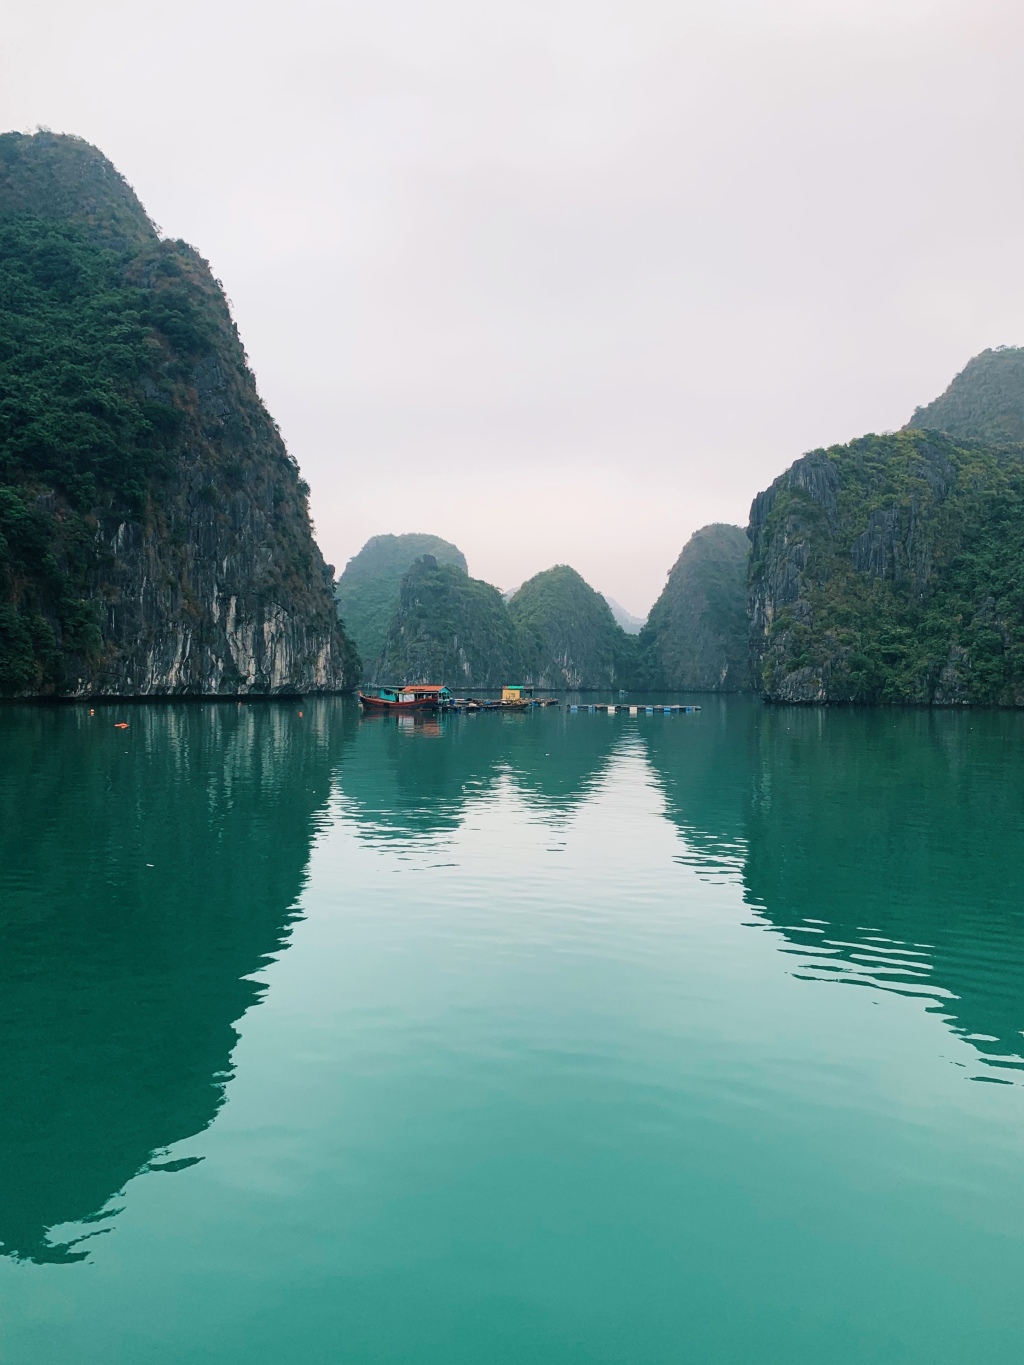 Reisebericht: Zwei Tage auf dem Wasser in der Halong Bucht